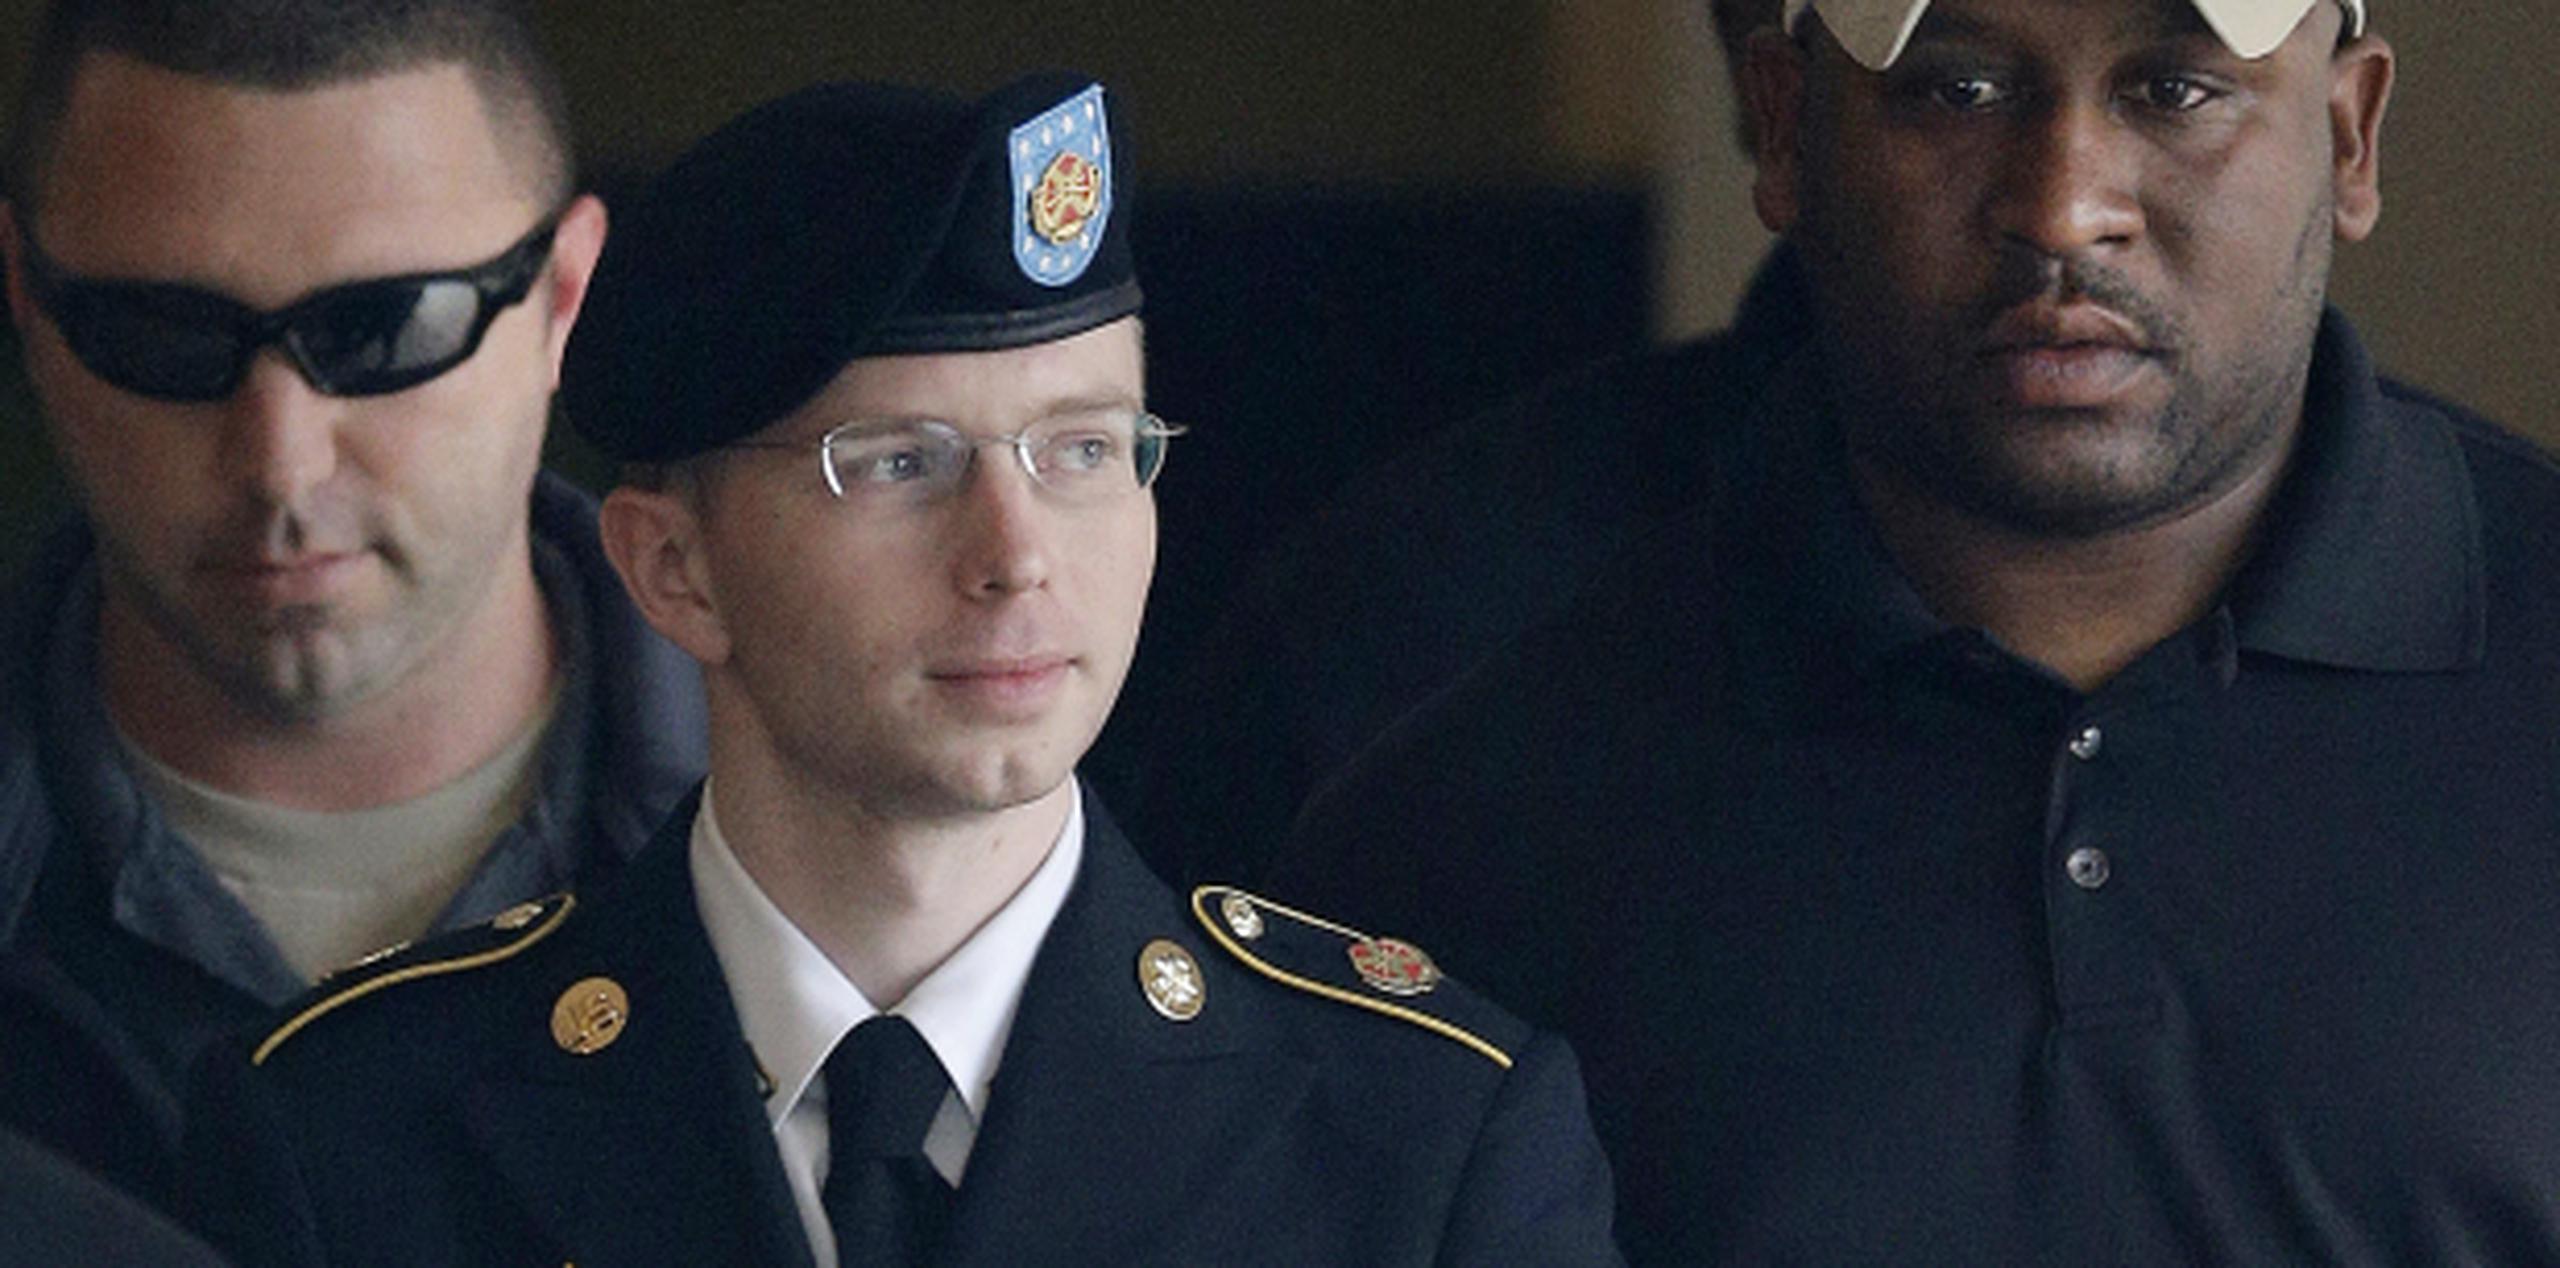 Manning, de 25 años, ha sido encontrado culpable de la mayor divulgación de documentos confidenciales y secretos del Gobierno de Estados Unidos a Wikileaks. (AP)